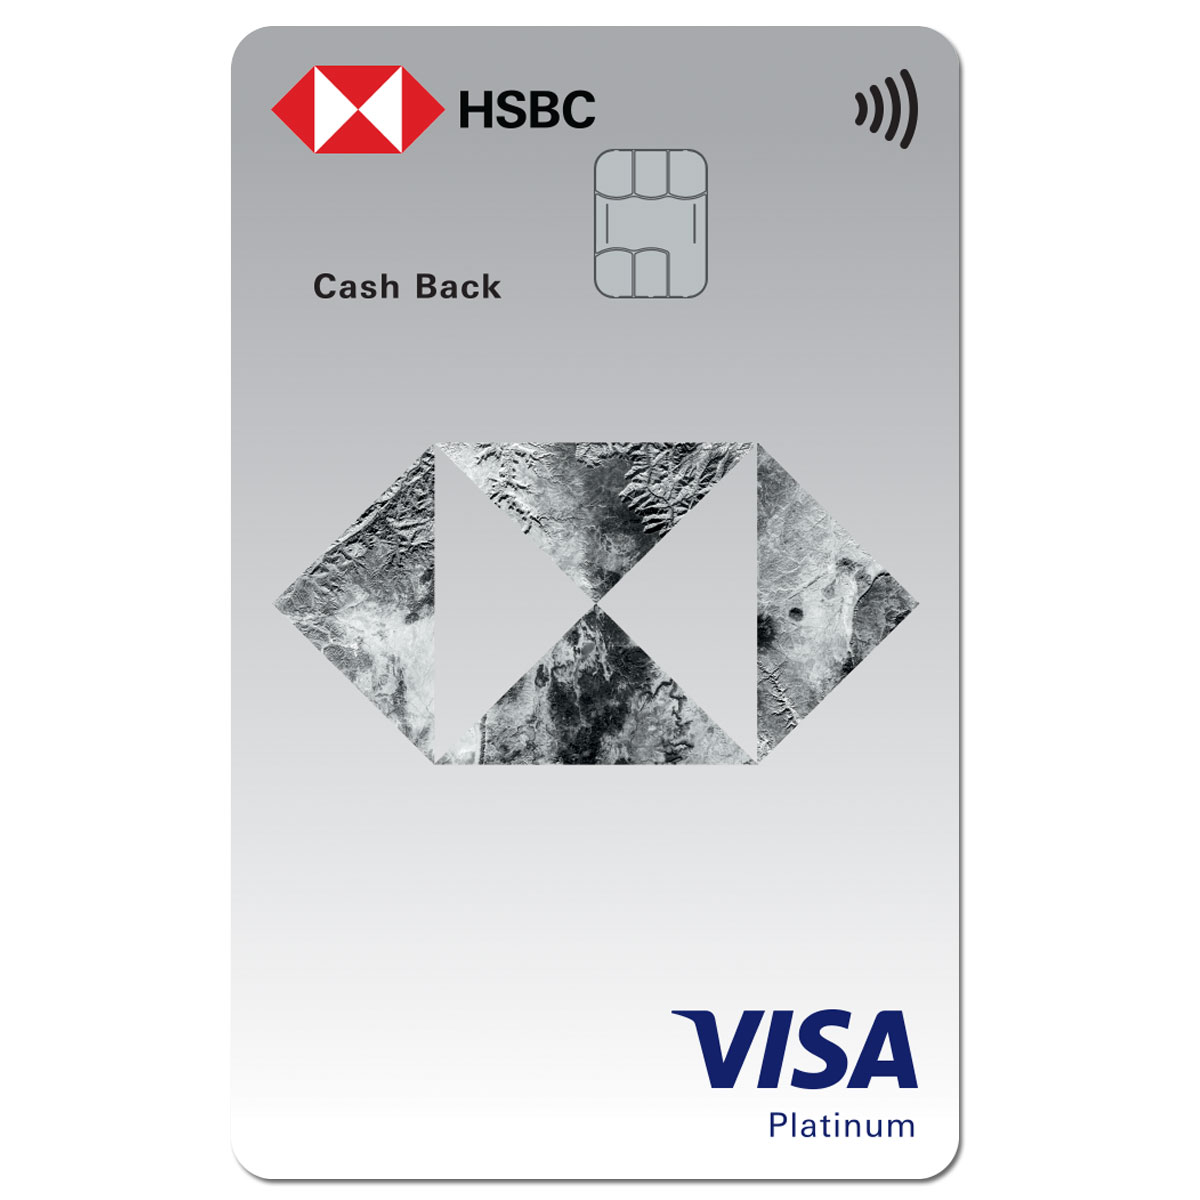 Thẻ tín dụng HSBC: Thẻ tín dụng HSBC sở hữu nhiều ưu điểm vượt trội, từ các mức phí hấp dẫn, tính năng đa dạng đến chương trình ưu đãi đa dạng và hấp dẫn. Hãy trở thành chủ sở hữu thẻ tín dụng HSBC để trải nghiệm sự thoải mái và tiện ích mà nó mang lại!